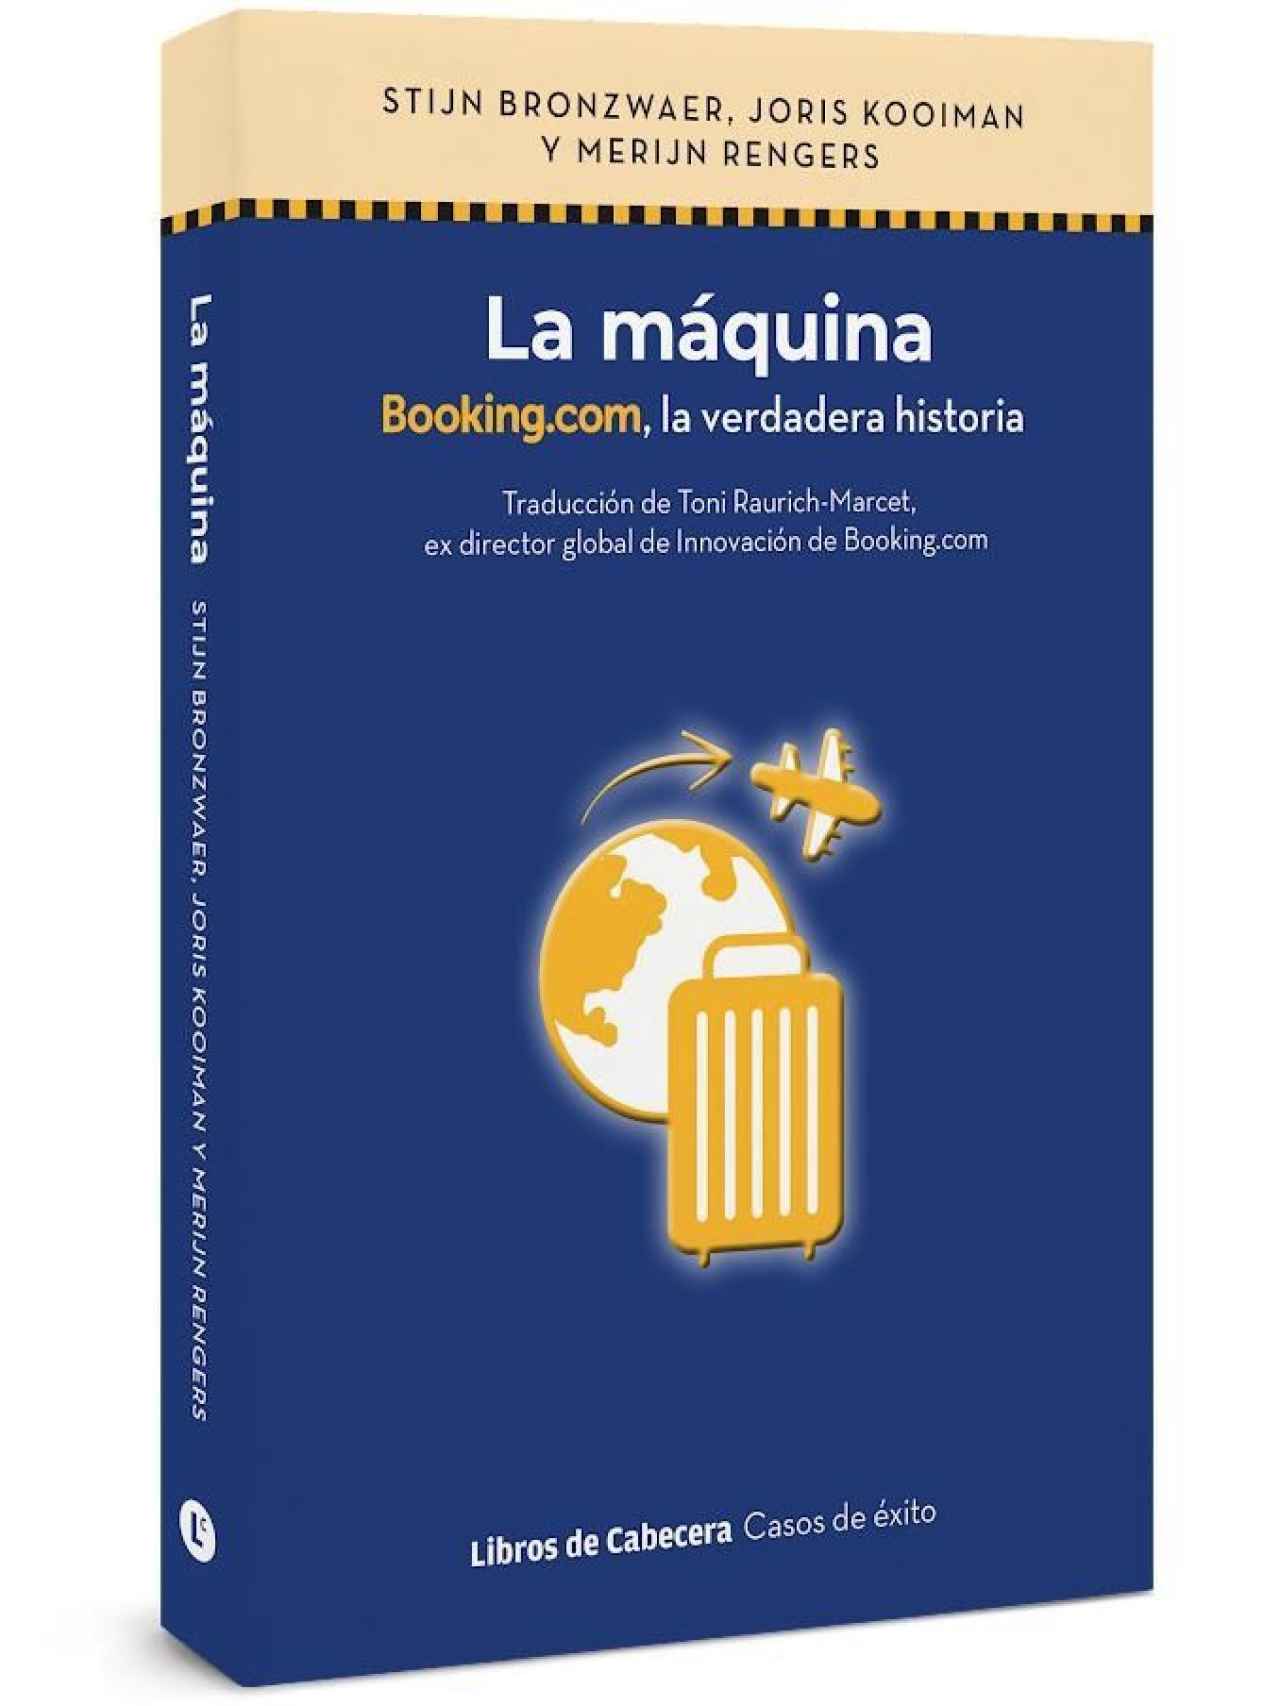 'La máquina, Booking.com, la verdadera historia', editado en español por Libros de cabecera